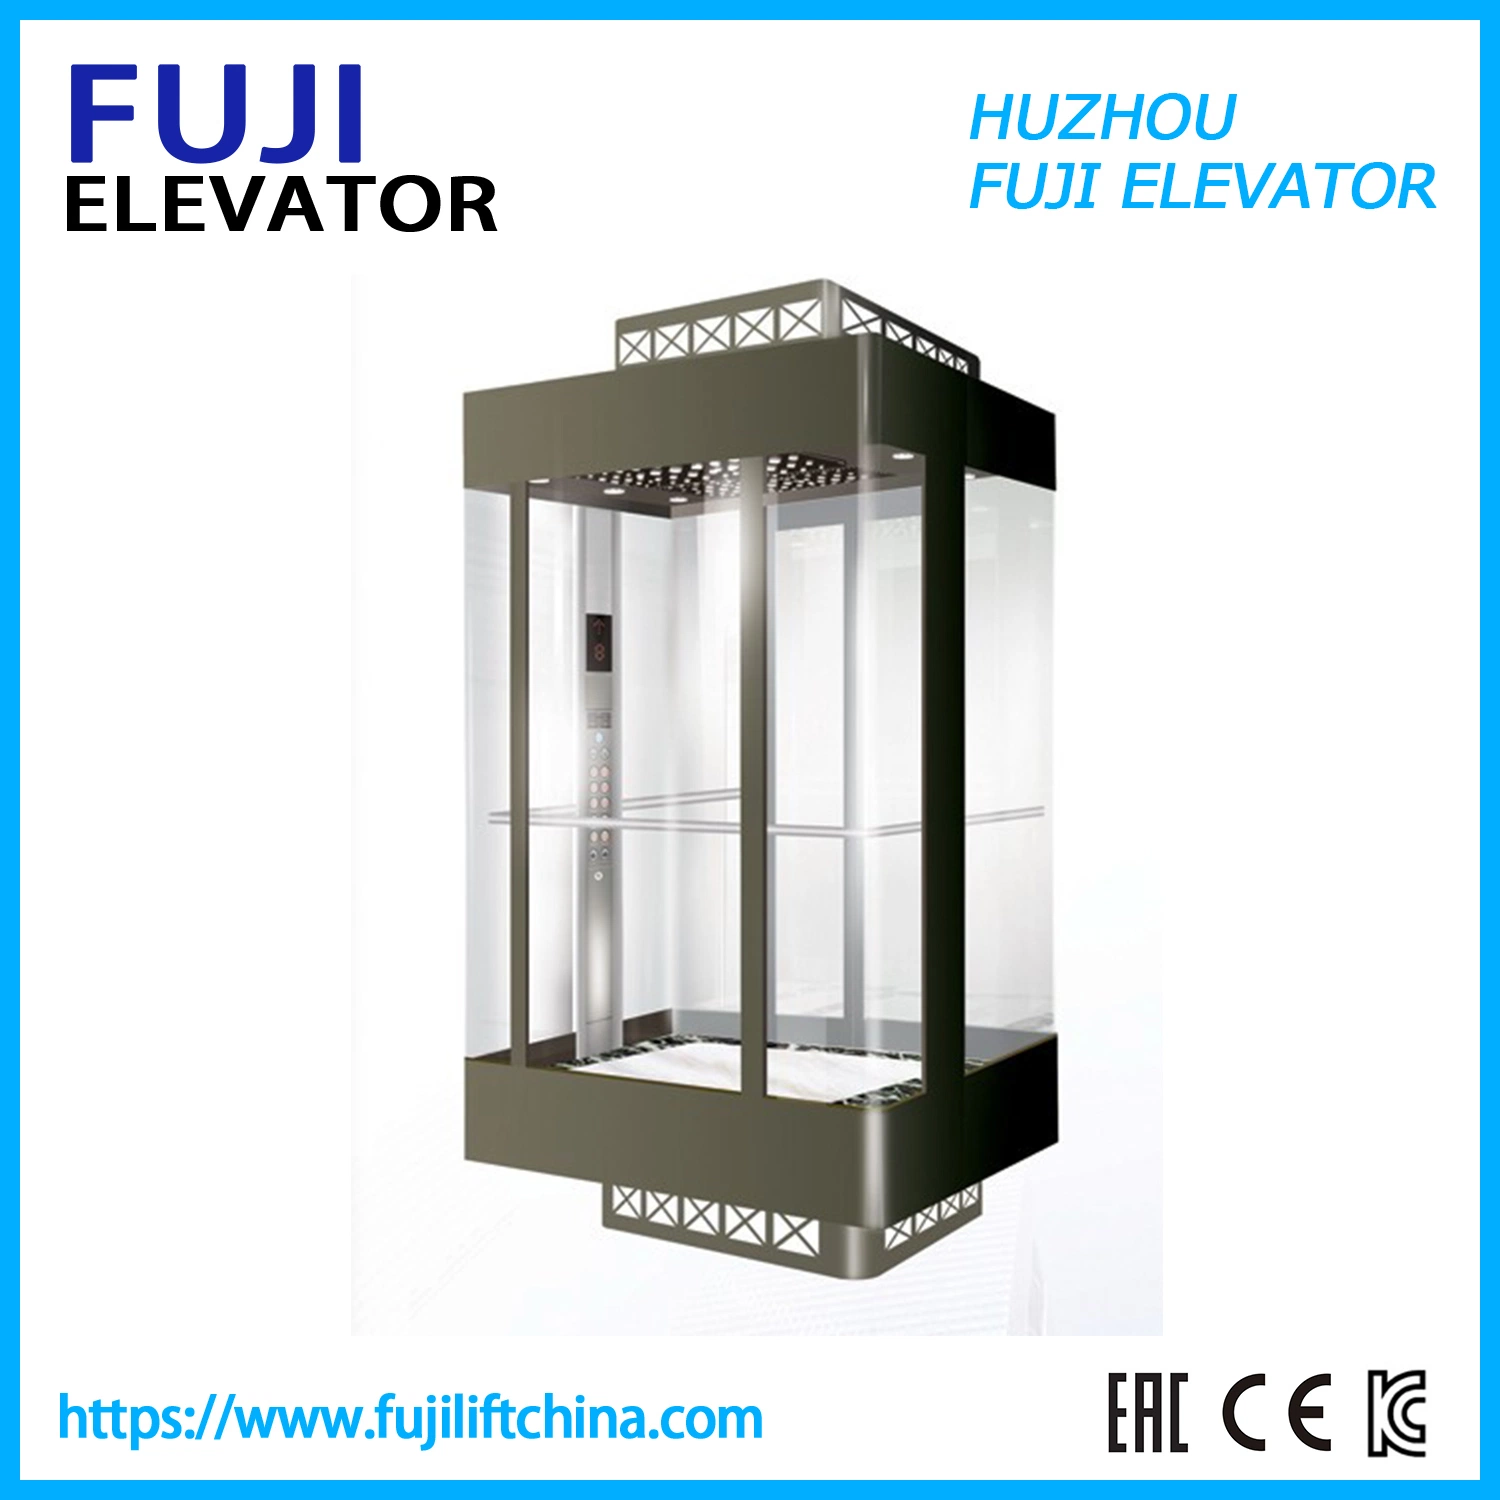 FUJI Usine Fabricant Ascenseur panoramique Ascenseur en verre avec Ascenseur touristique Ascenseur domestique Ascenseur de villa Ascenseur de passagers Ascenseur Chine Ascenseur